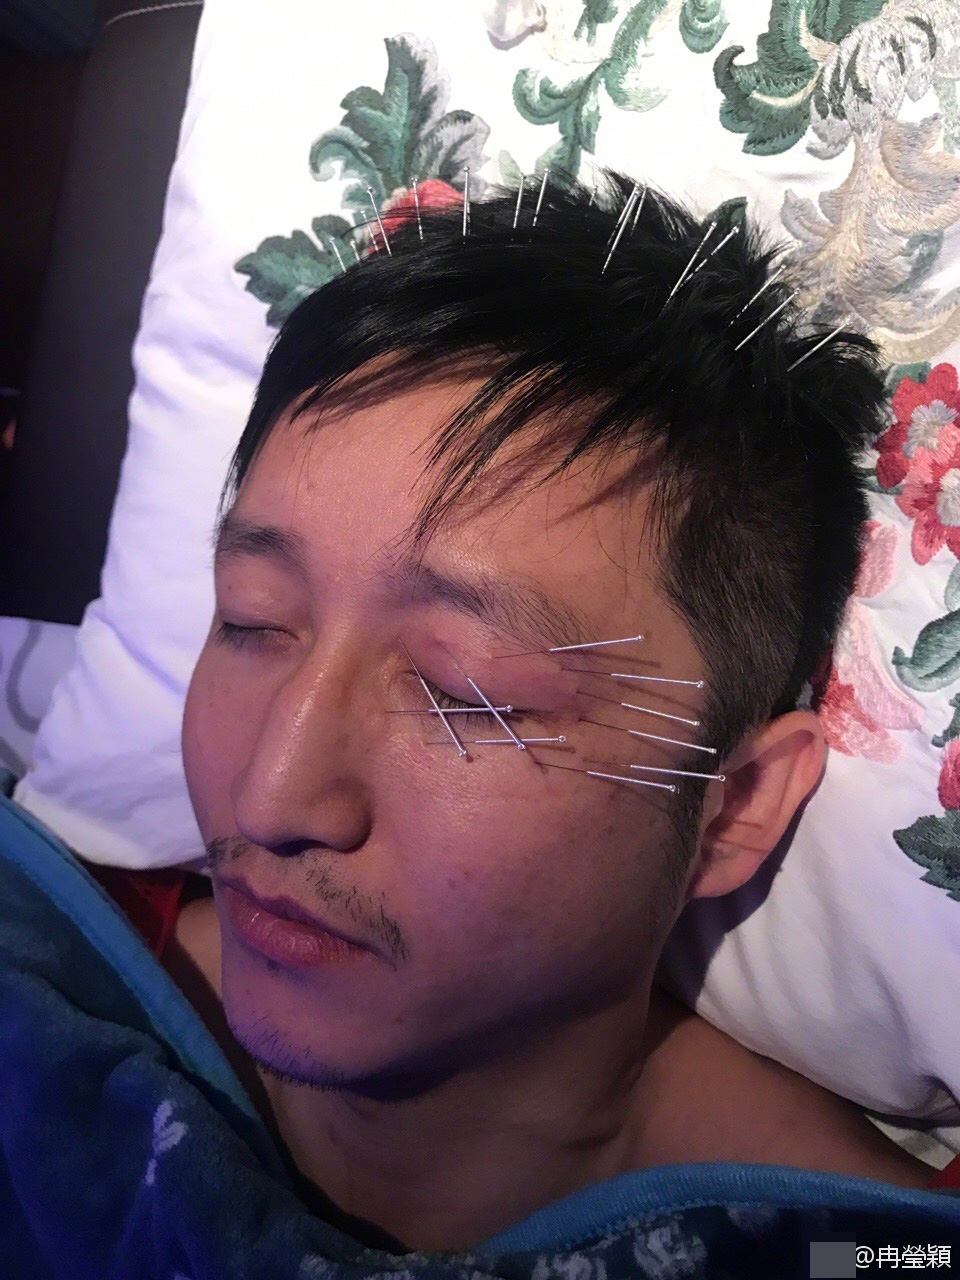 照片中邹市明左眼和头部扎满了针灸用的银针,相当令人心疼.